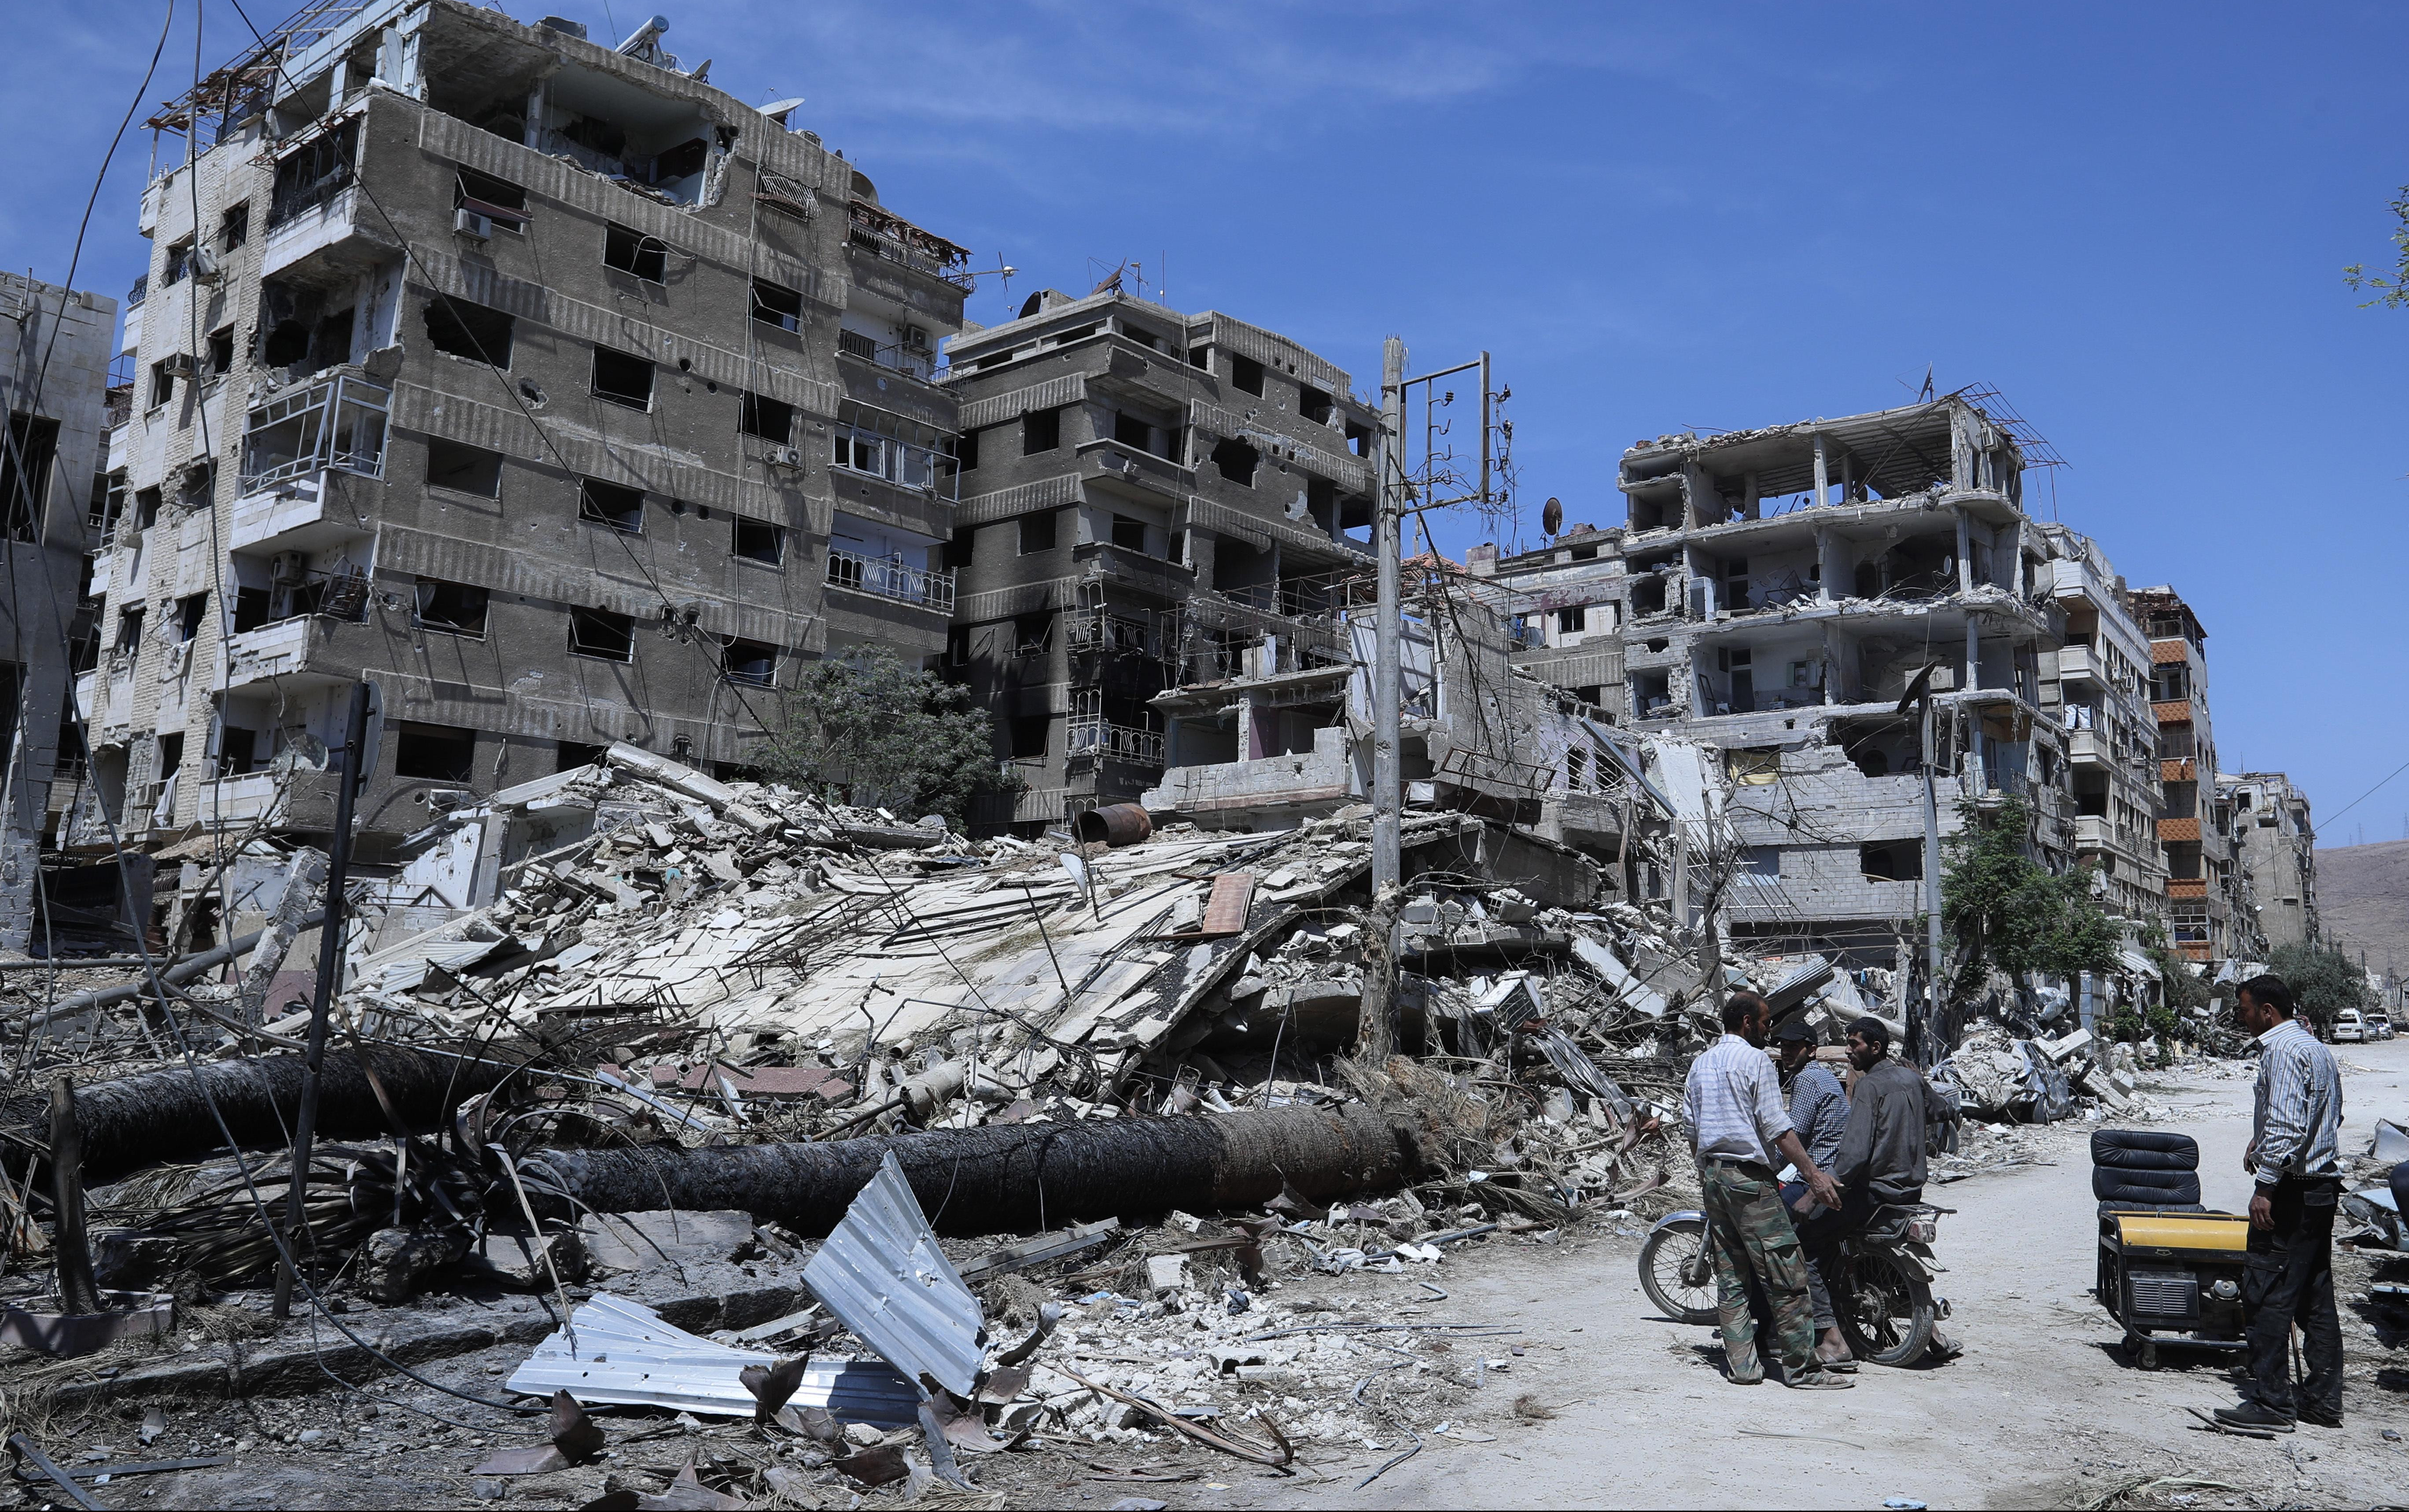 AMERIKANCI NAČISTO PROLUPALI: Rusija i Sirija "čiste" mesto napada